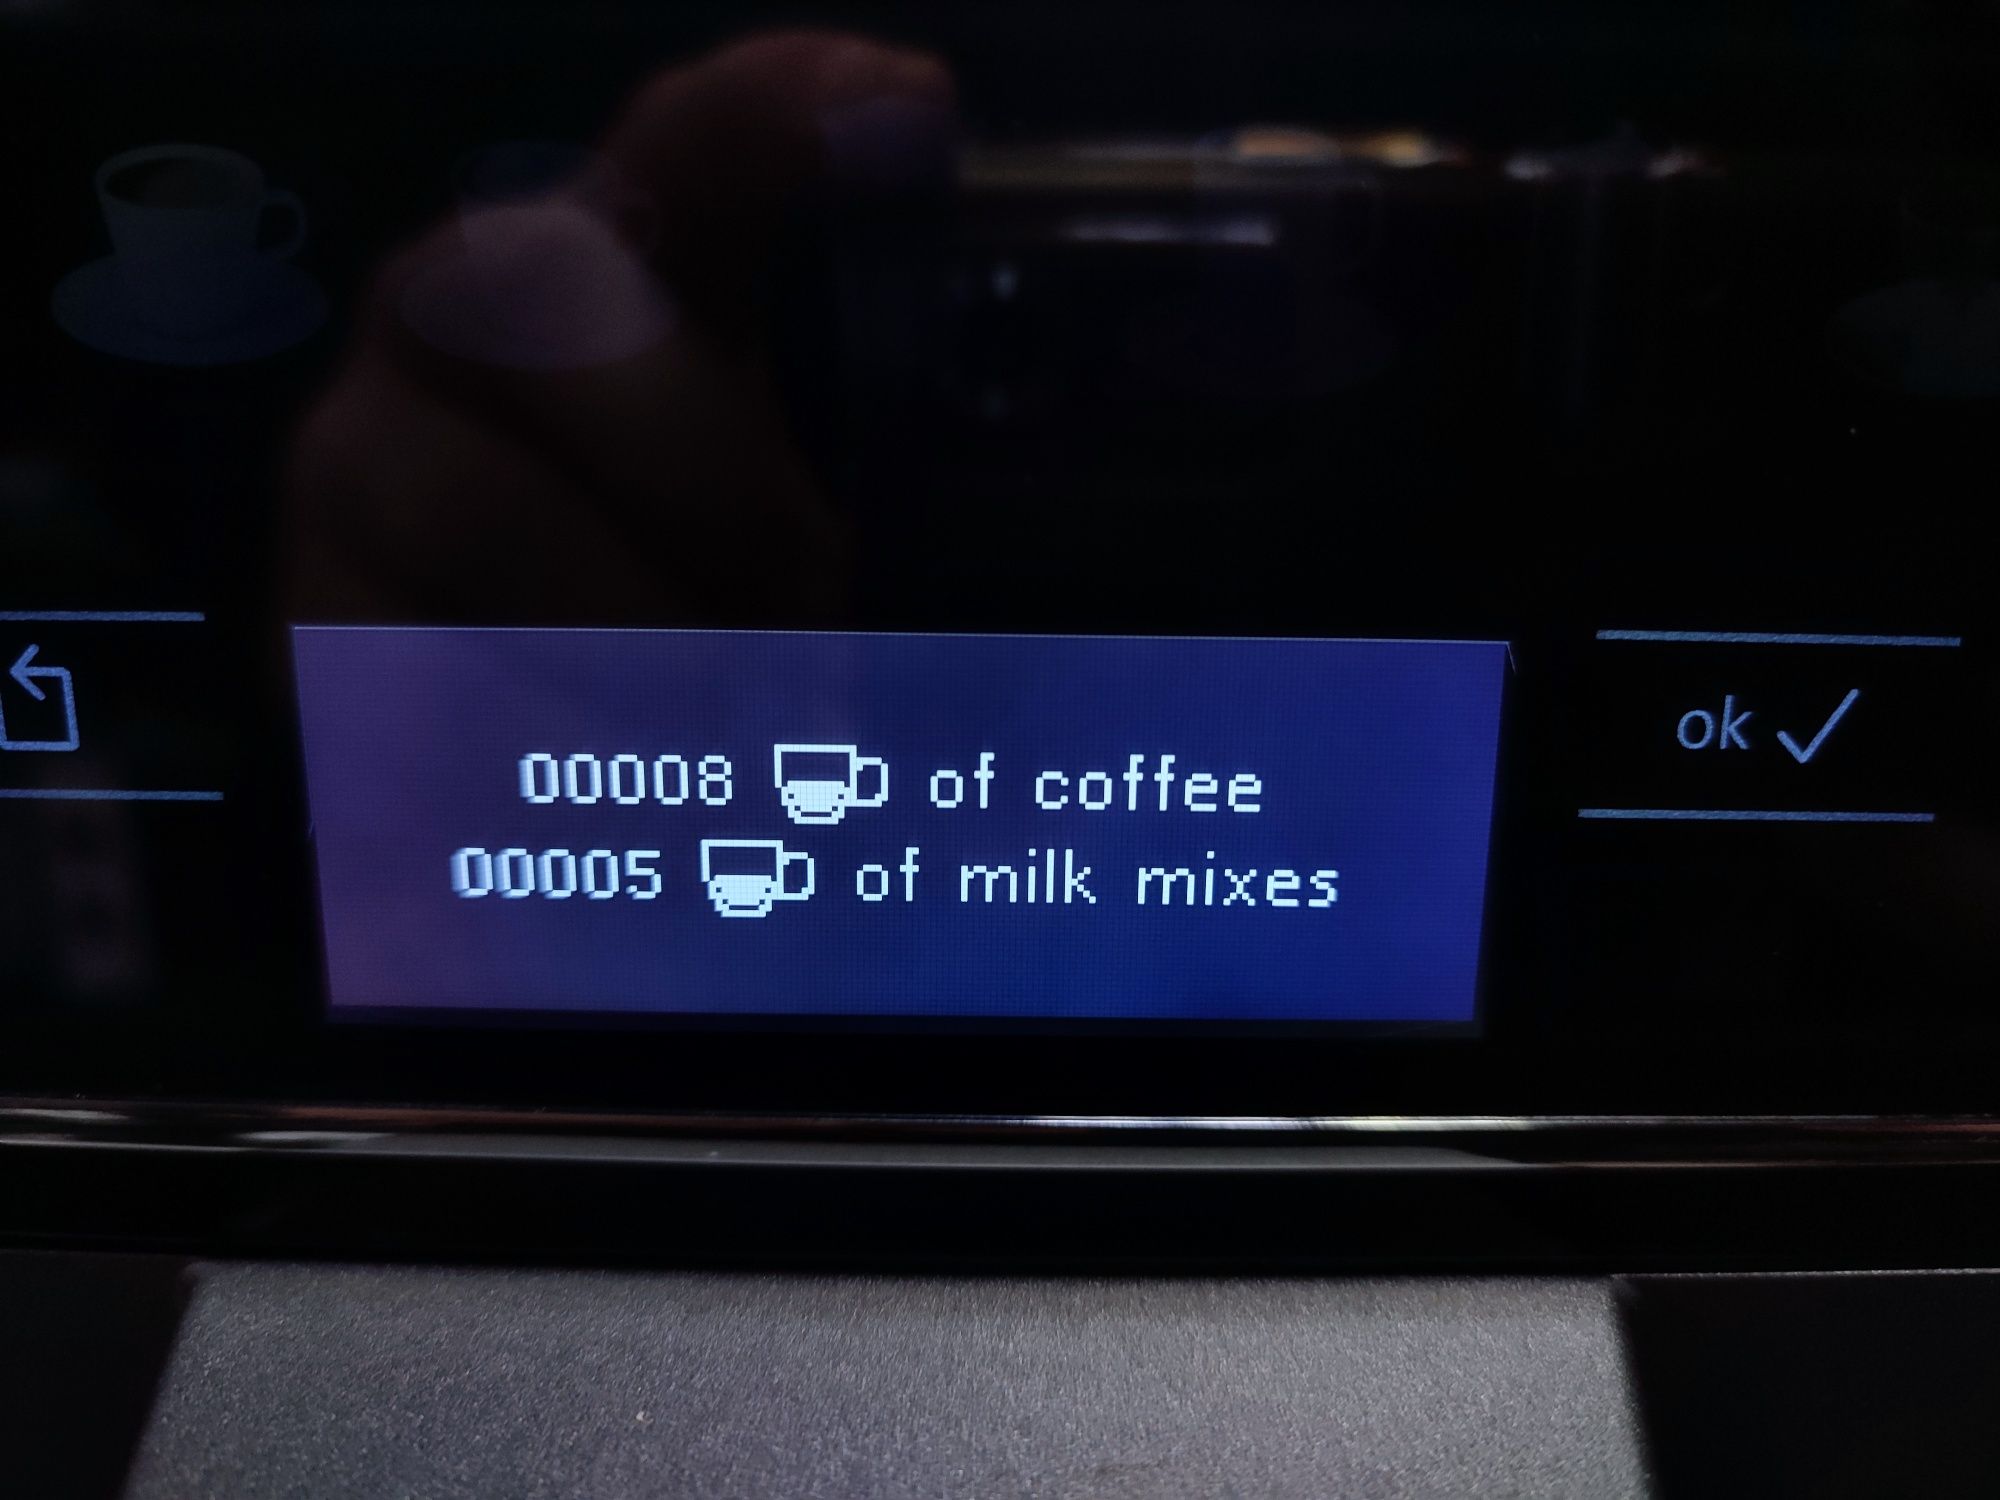 НОВА!!! Кофемашина Siemens EQ6 Series 300 (кавоварка)